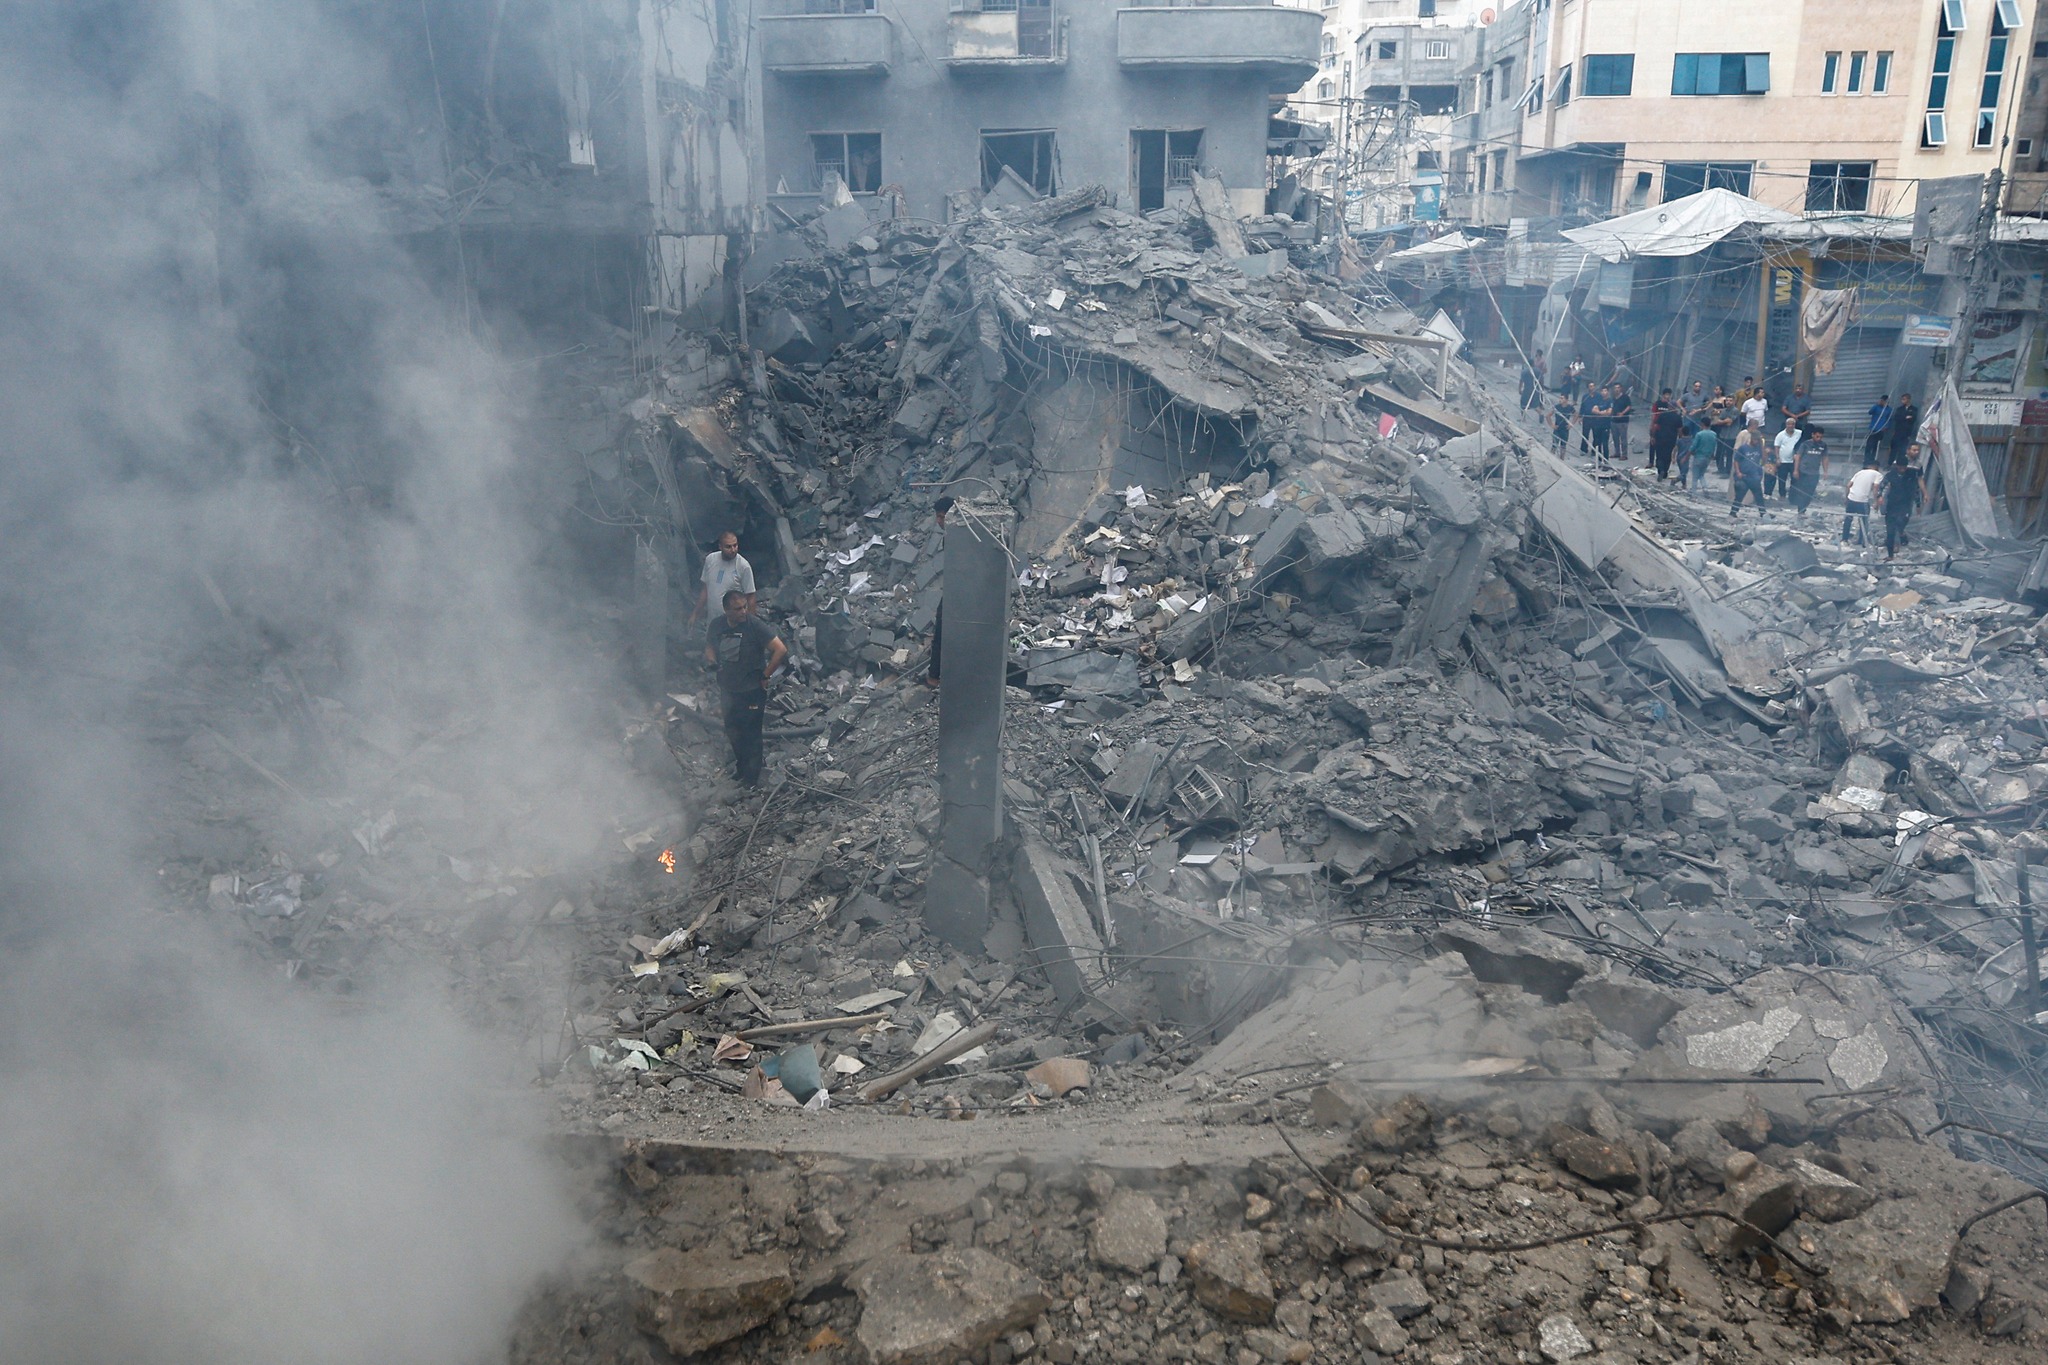 اختفاء معالم الشوارع والبنايات في غزة جراء القصف العنيف خلال الهجمات الإسرائيلية